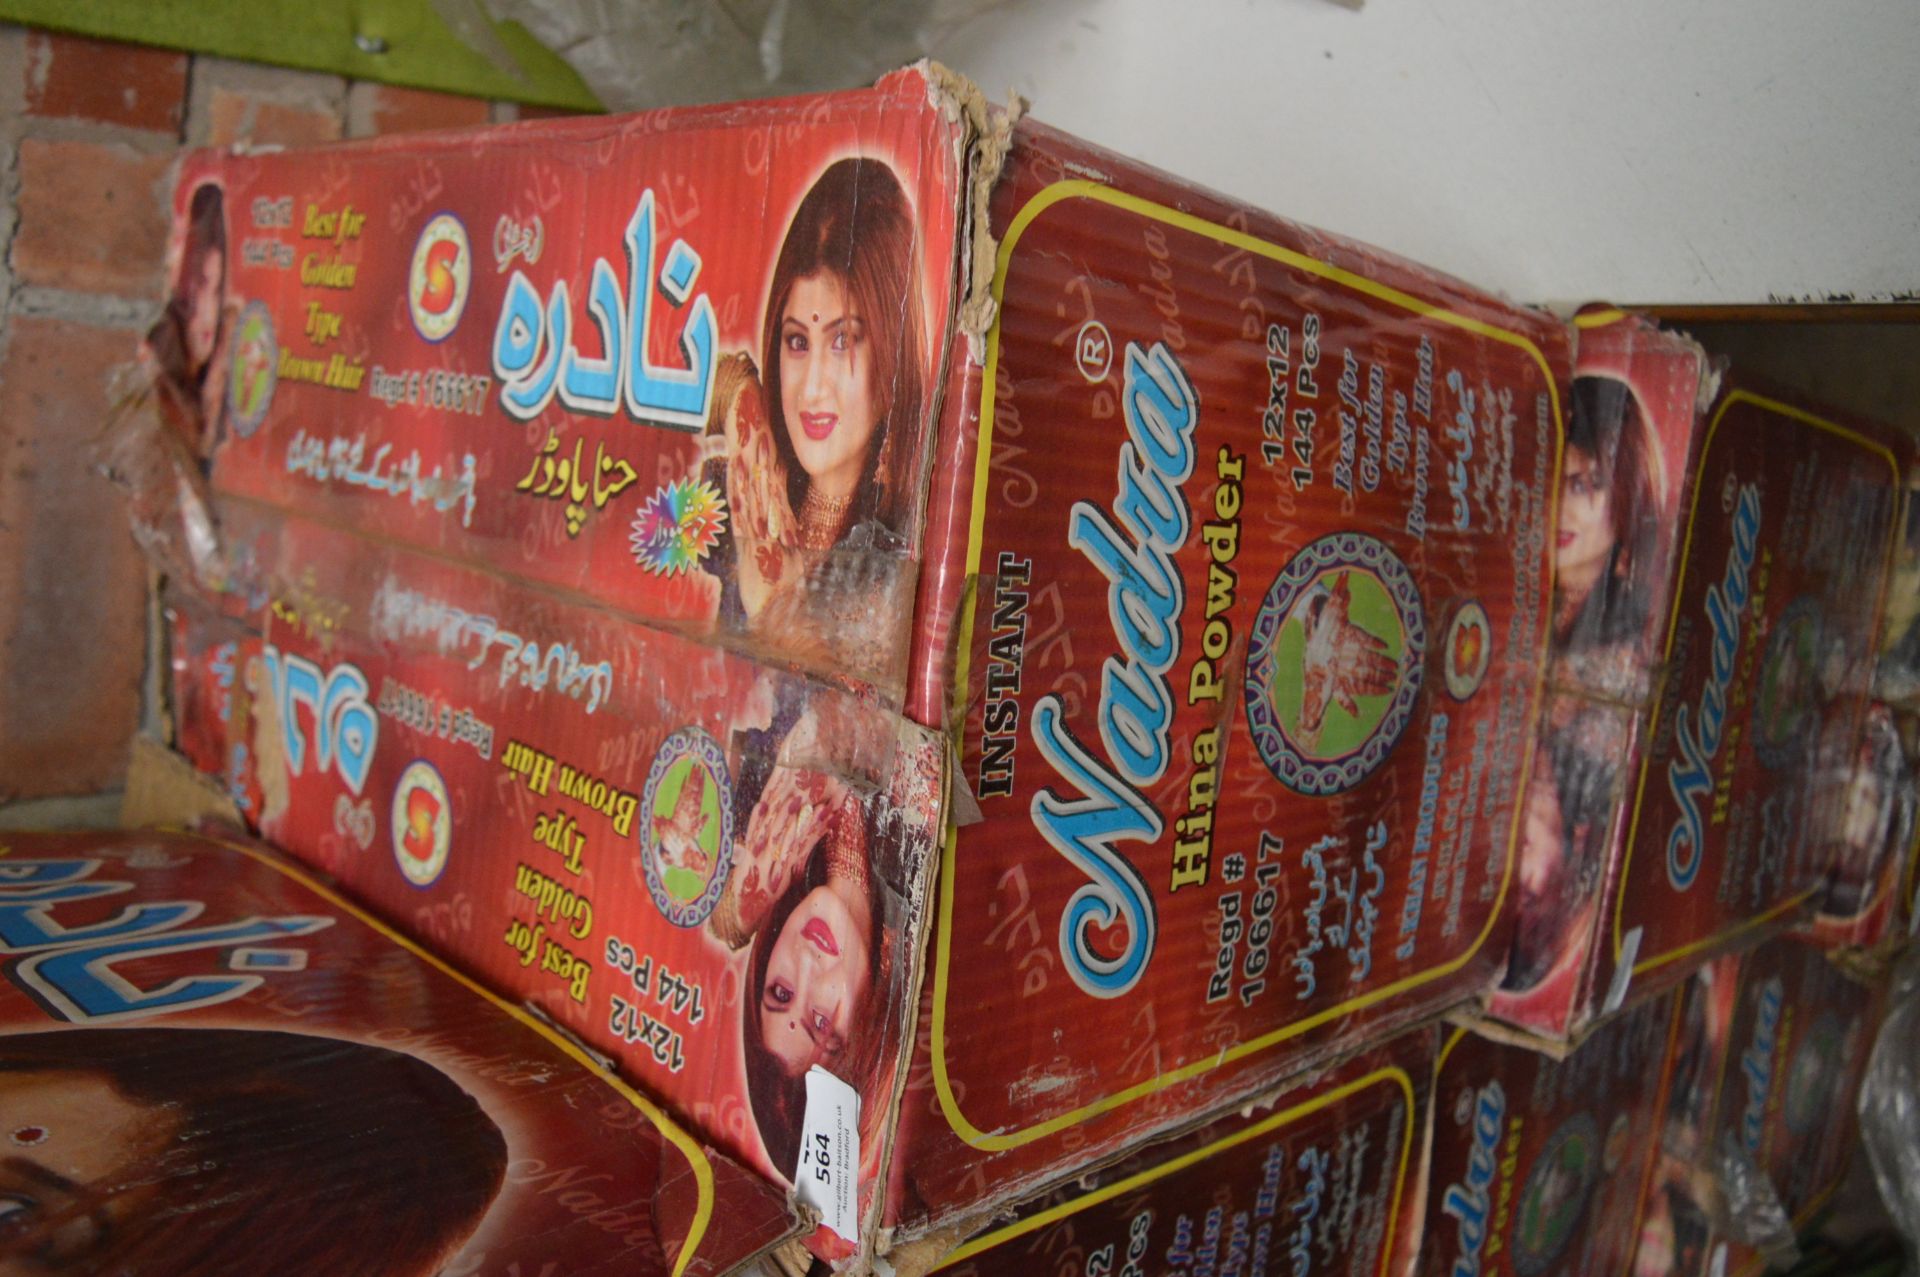 Box Containing 12x12 Packs of Nadra Hina Powder